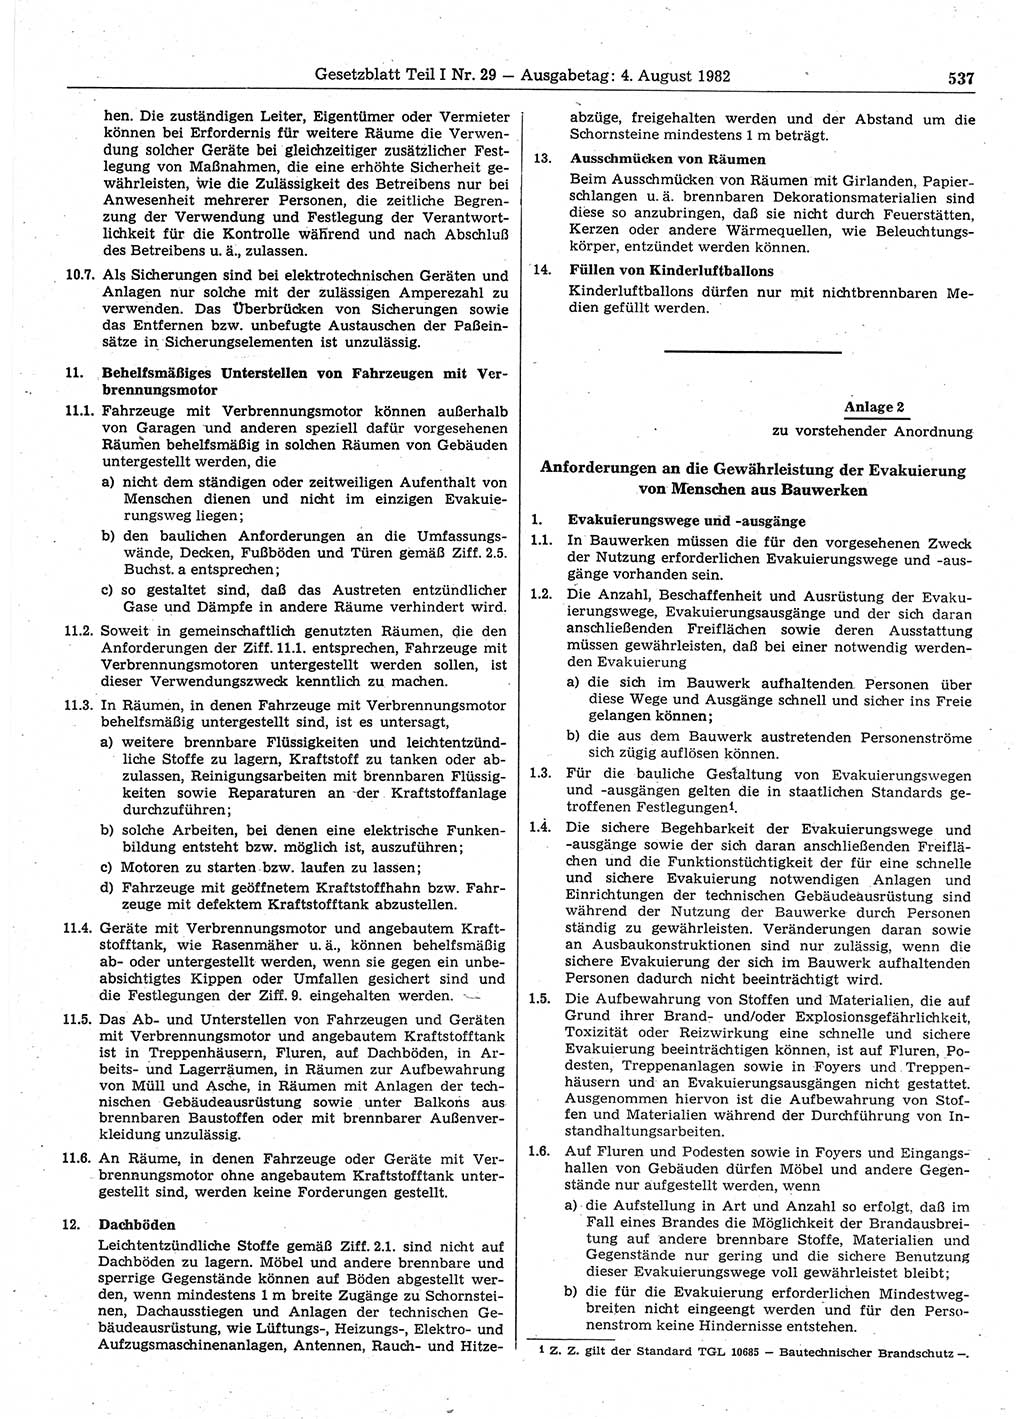 Gesetzblatt (GBl.) der Deutschen Demokratischen Republik (DDR) Teil Ⅰ 1982, Seite 537 (GBl. DDR Ⅰ 1982, S. 537)